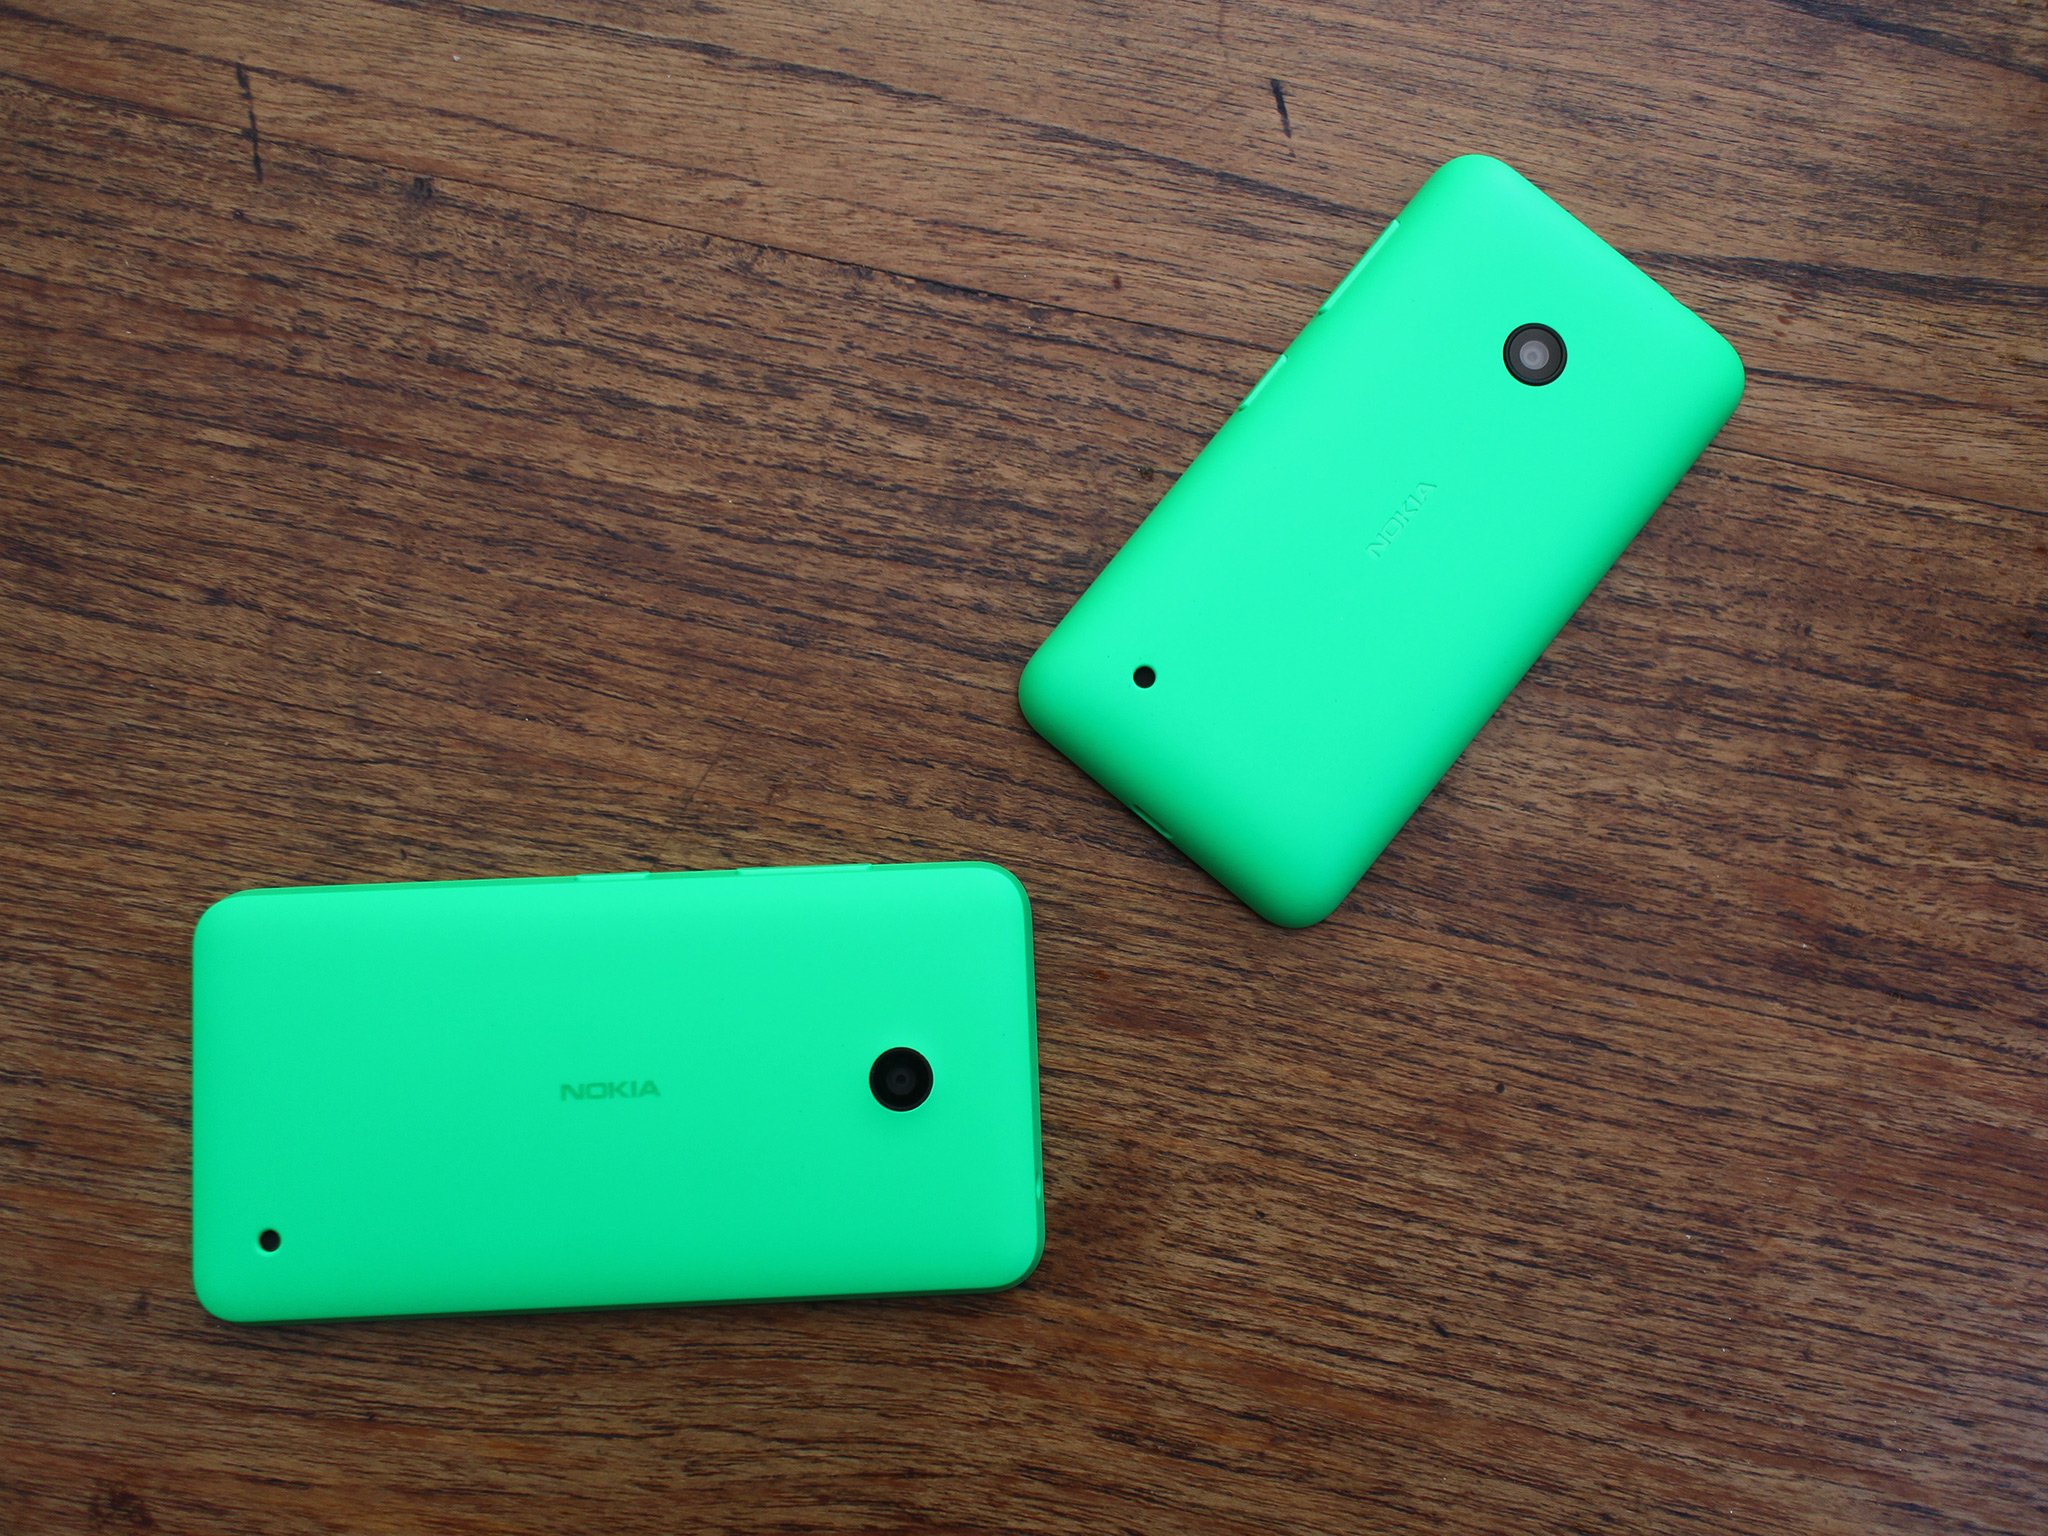 Lumia 635 vs Lumia 530